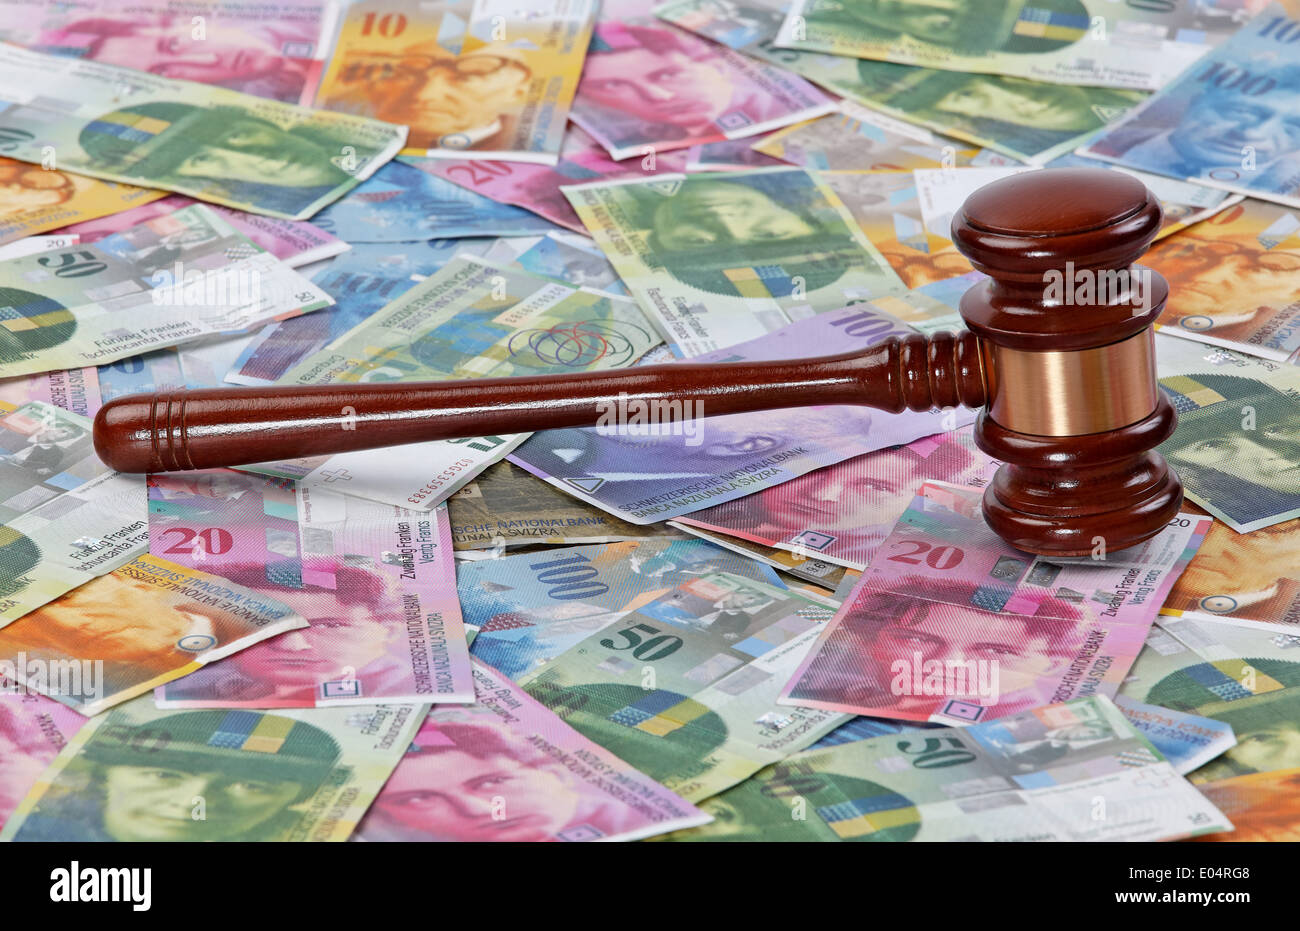 Money Swiss franc and a judge hammer, Geld Schweizer Franken und ein Richter Hammer Stock Photo